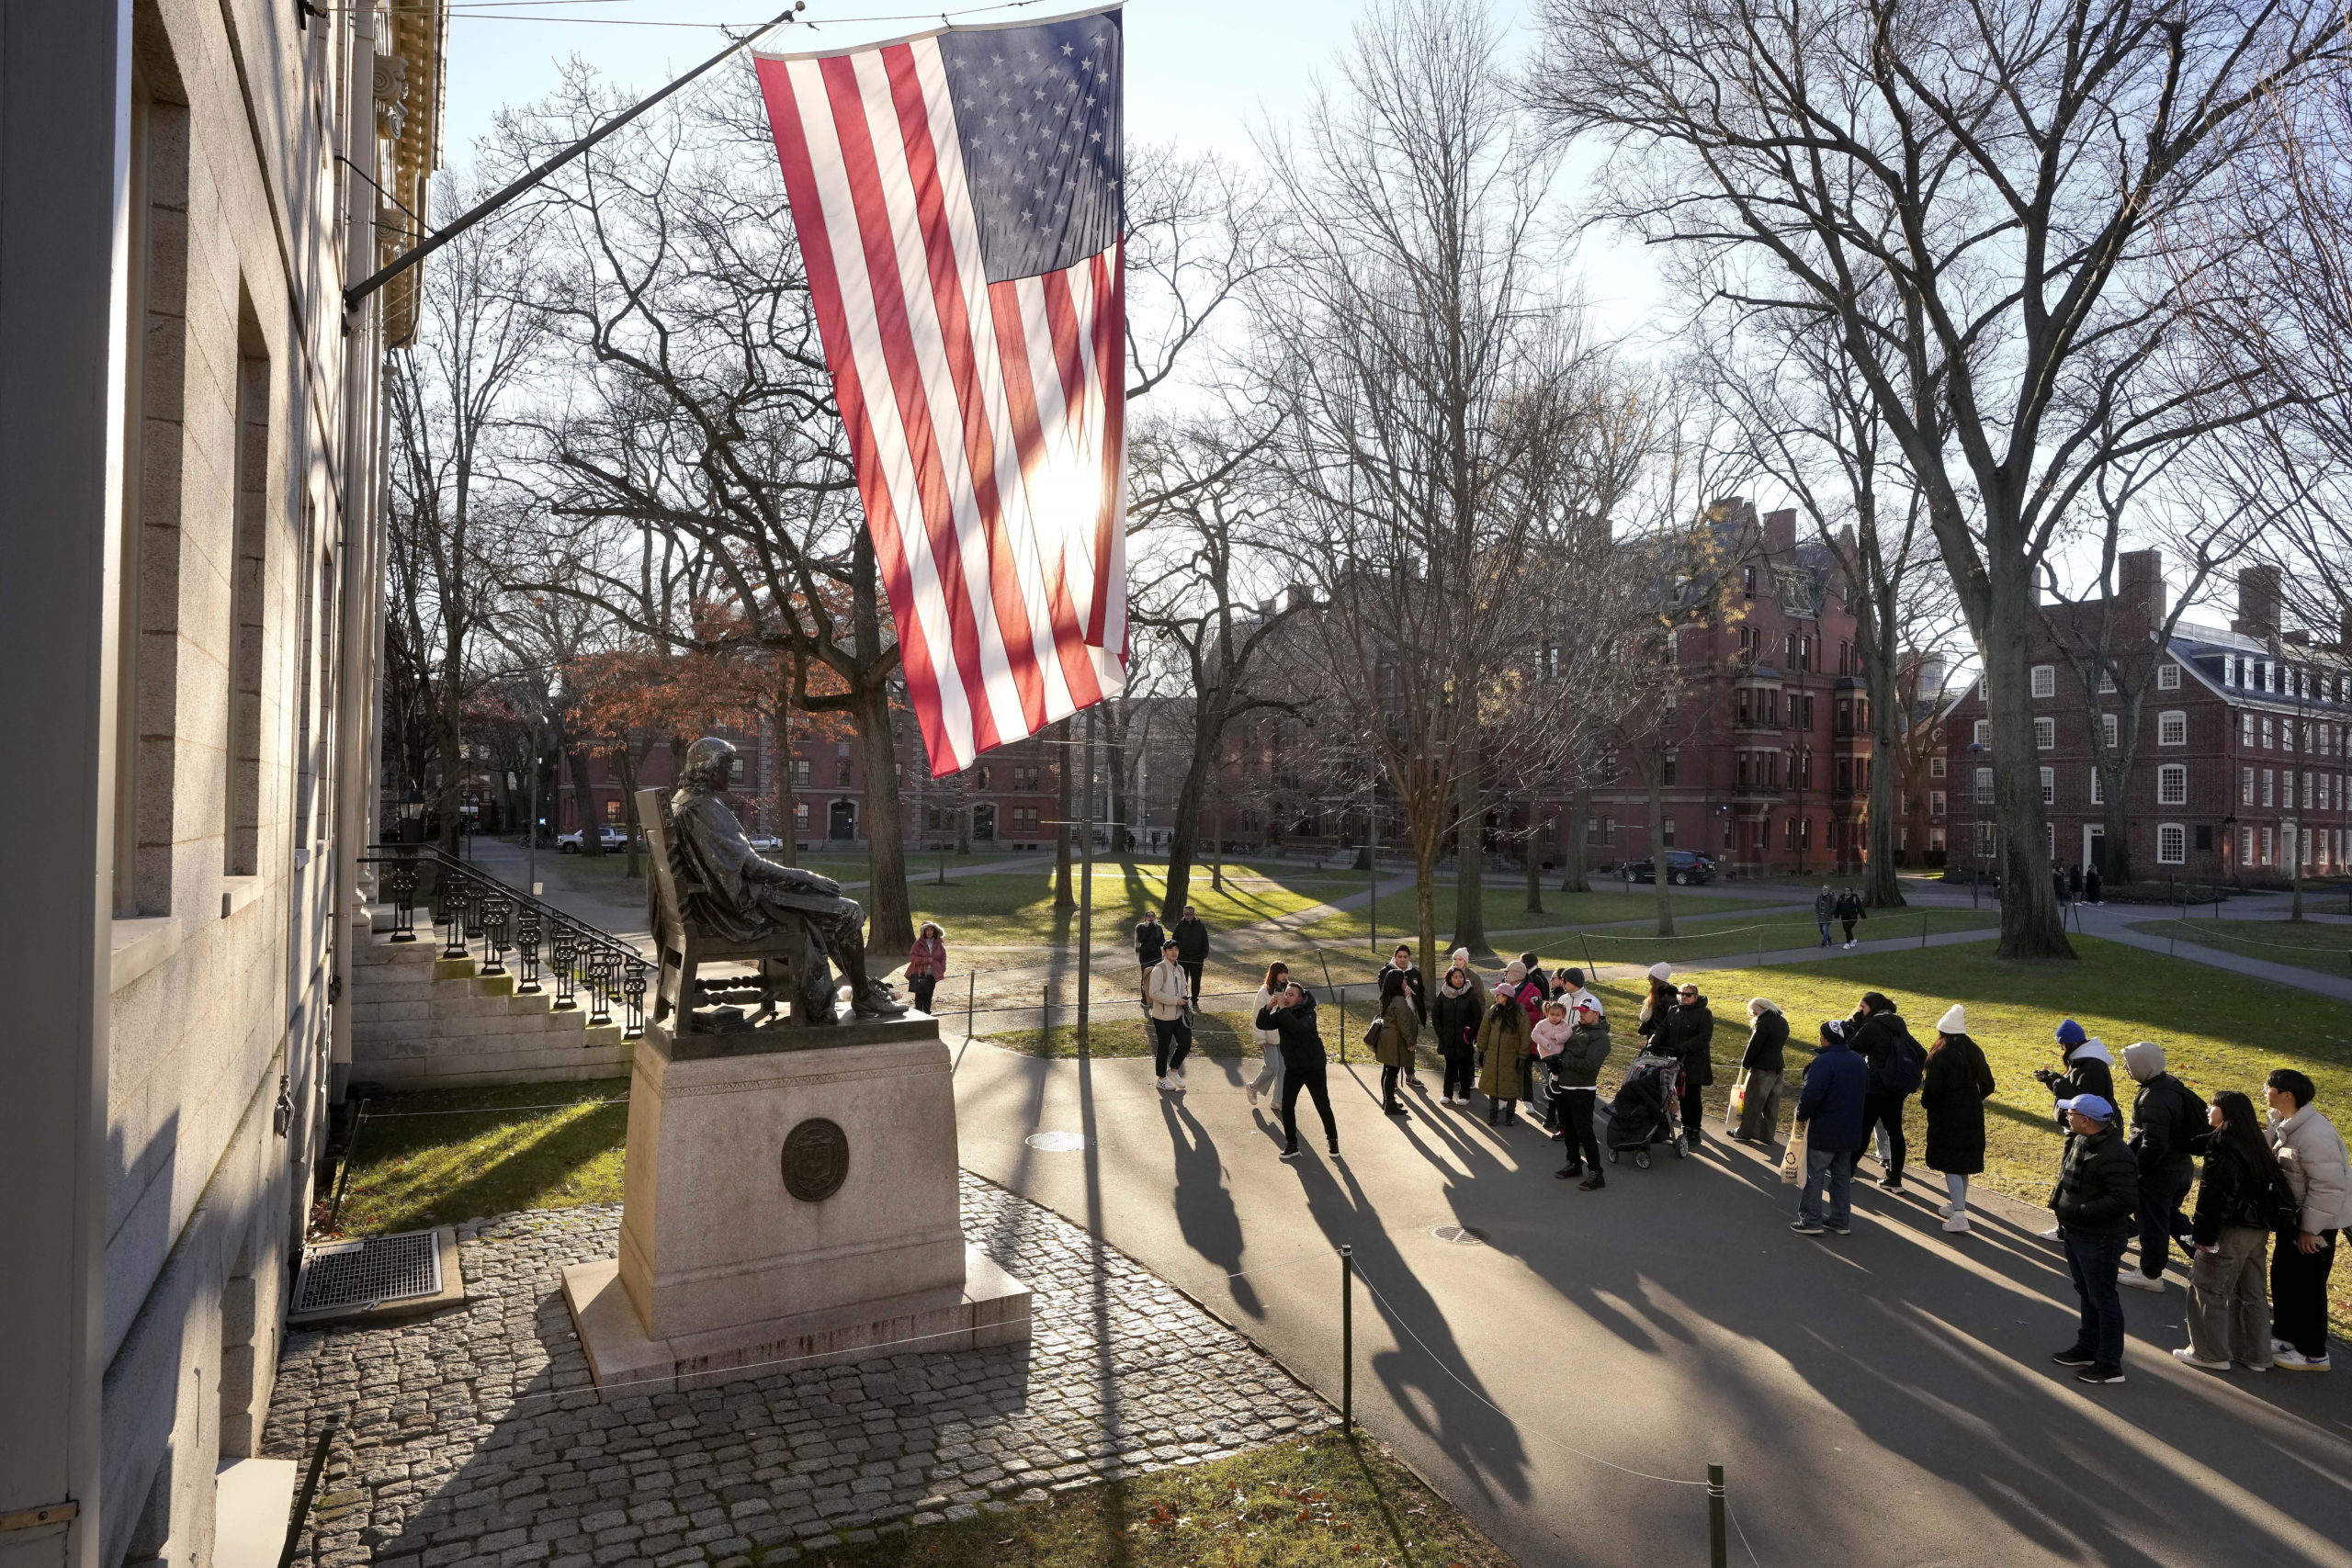 People take photos near a John Harvard statue, left, on the Harvard University campus in Cambridge, Massachusetts, on Jan. 2.